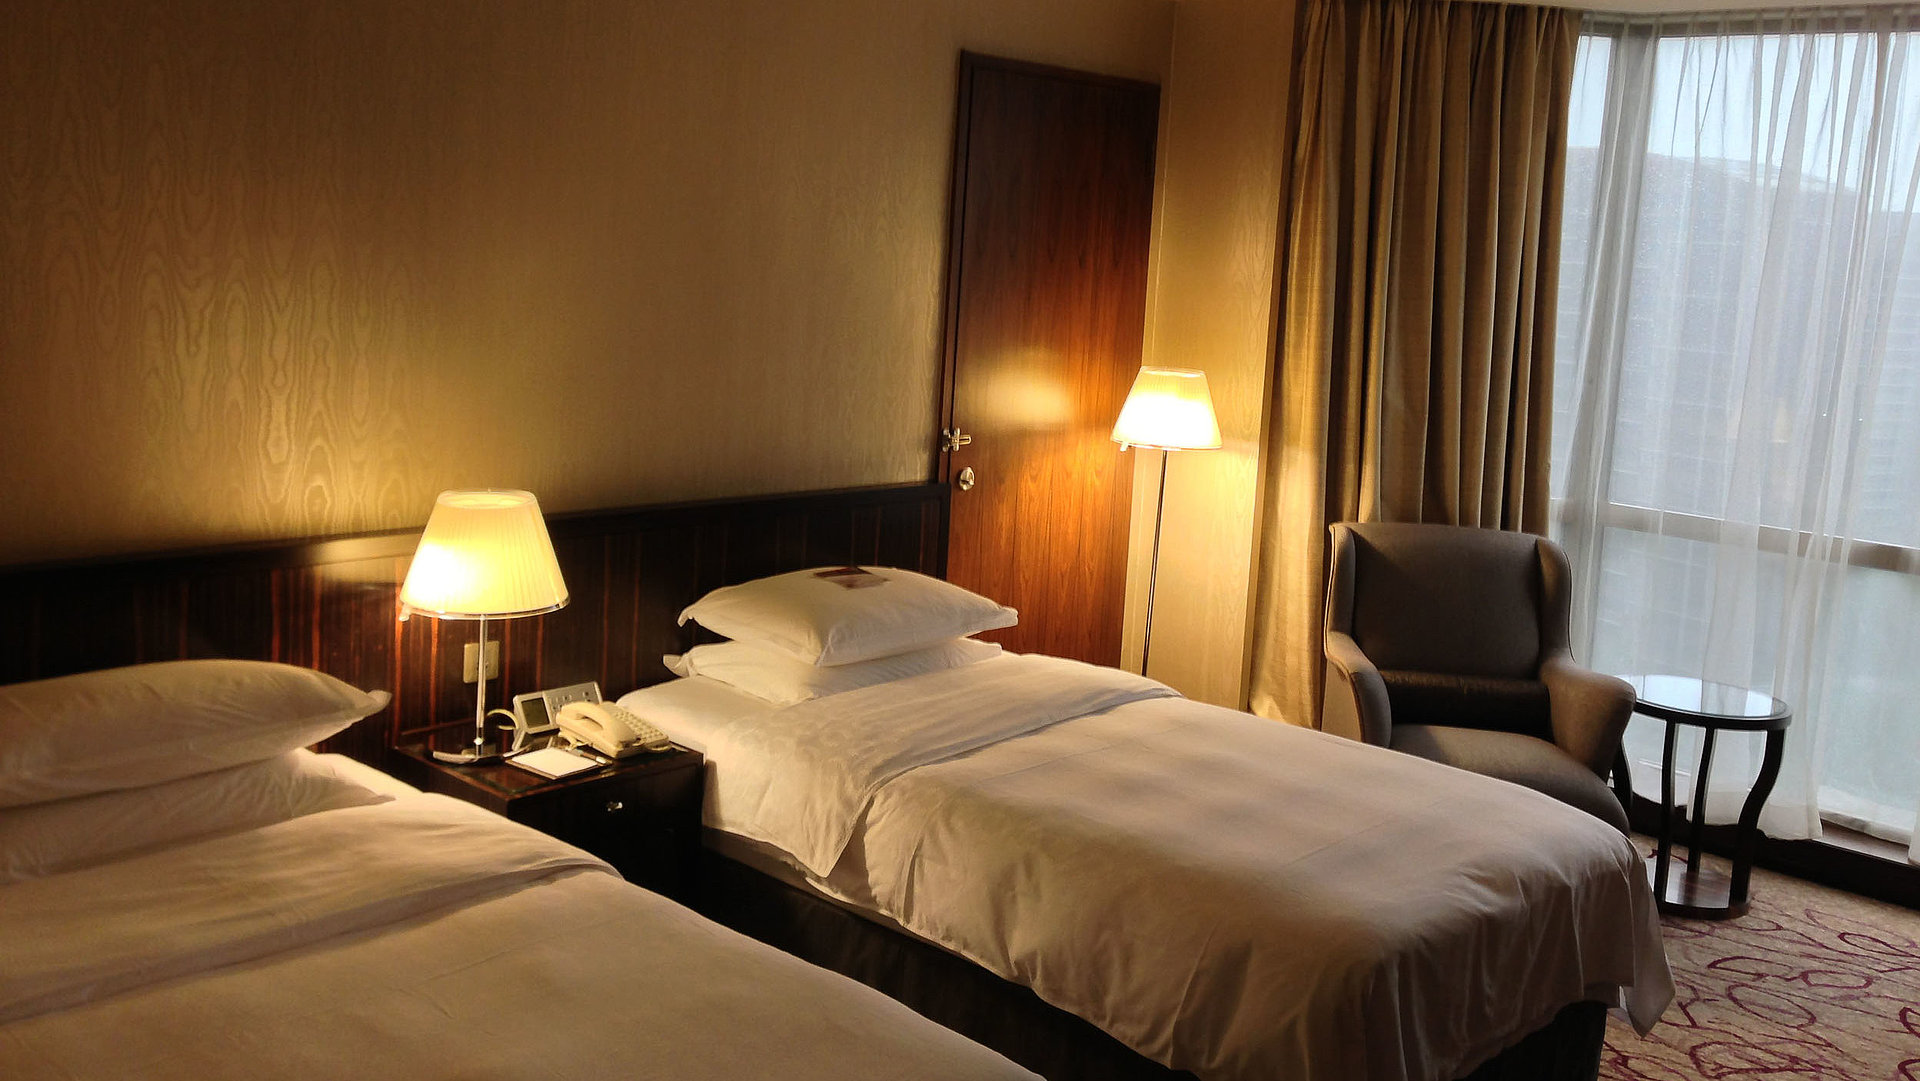 Übernachten Panorama in Ostbayern - sehr ordentliches Hotelzimmer mit zwei Betten, warmer Nachtlampe und Gardinen